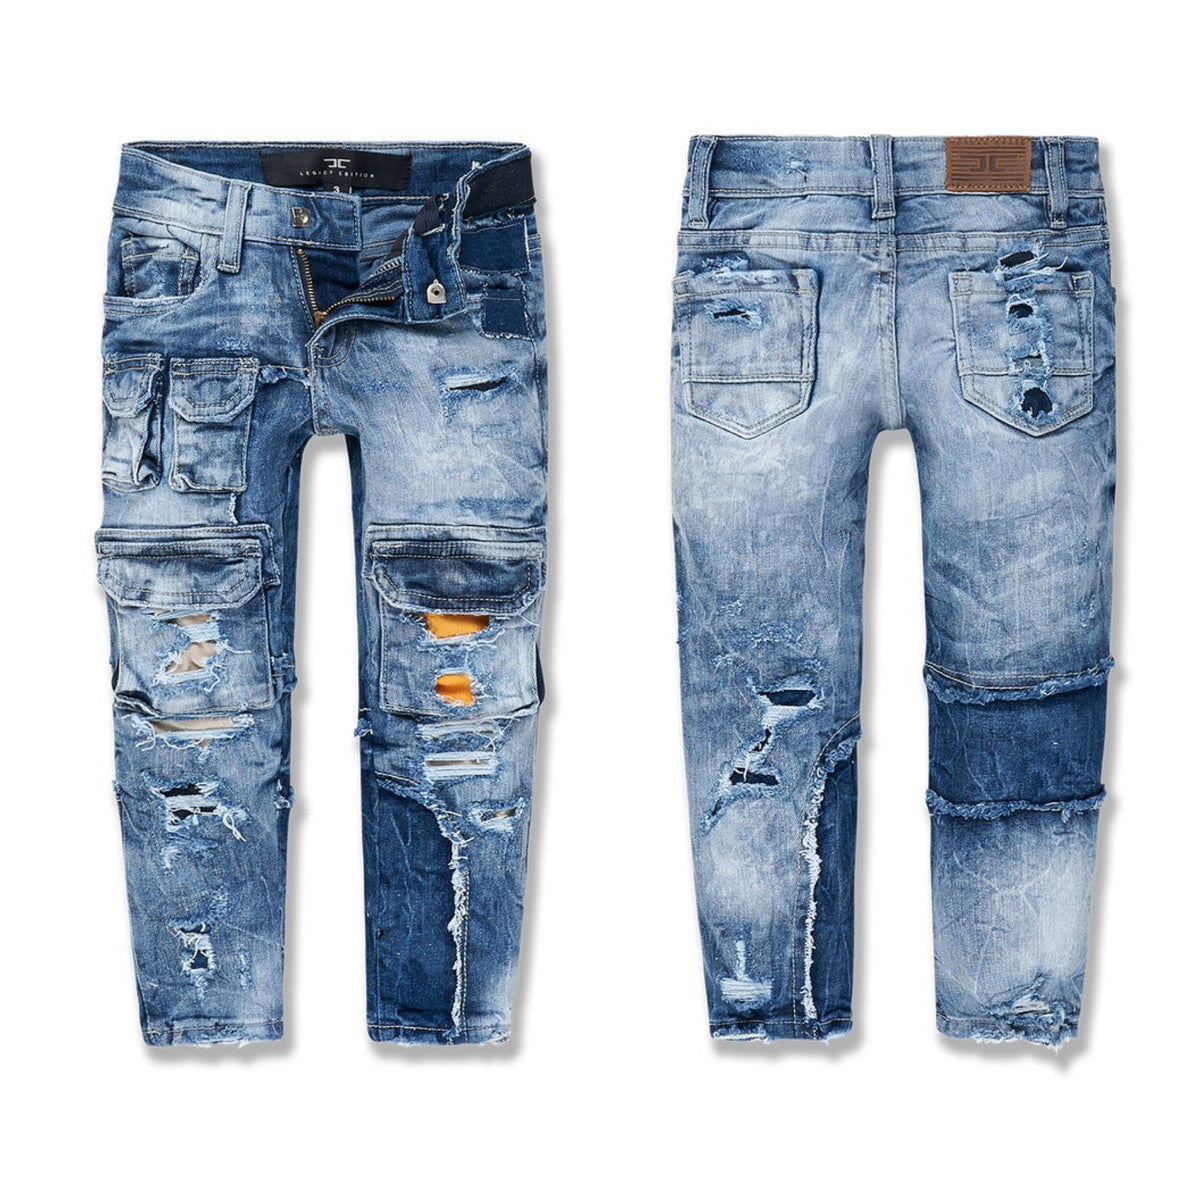 Jordan Craig - Kids Ambition Denim Jeans - Aged Wash (JM3497K)